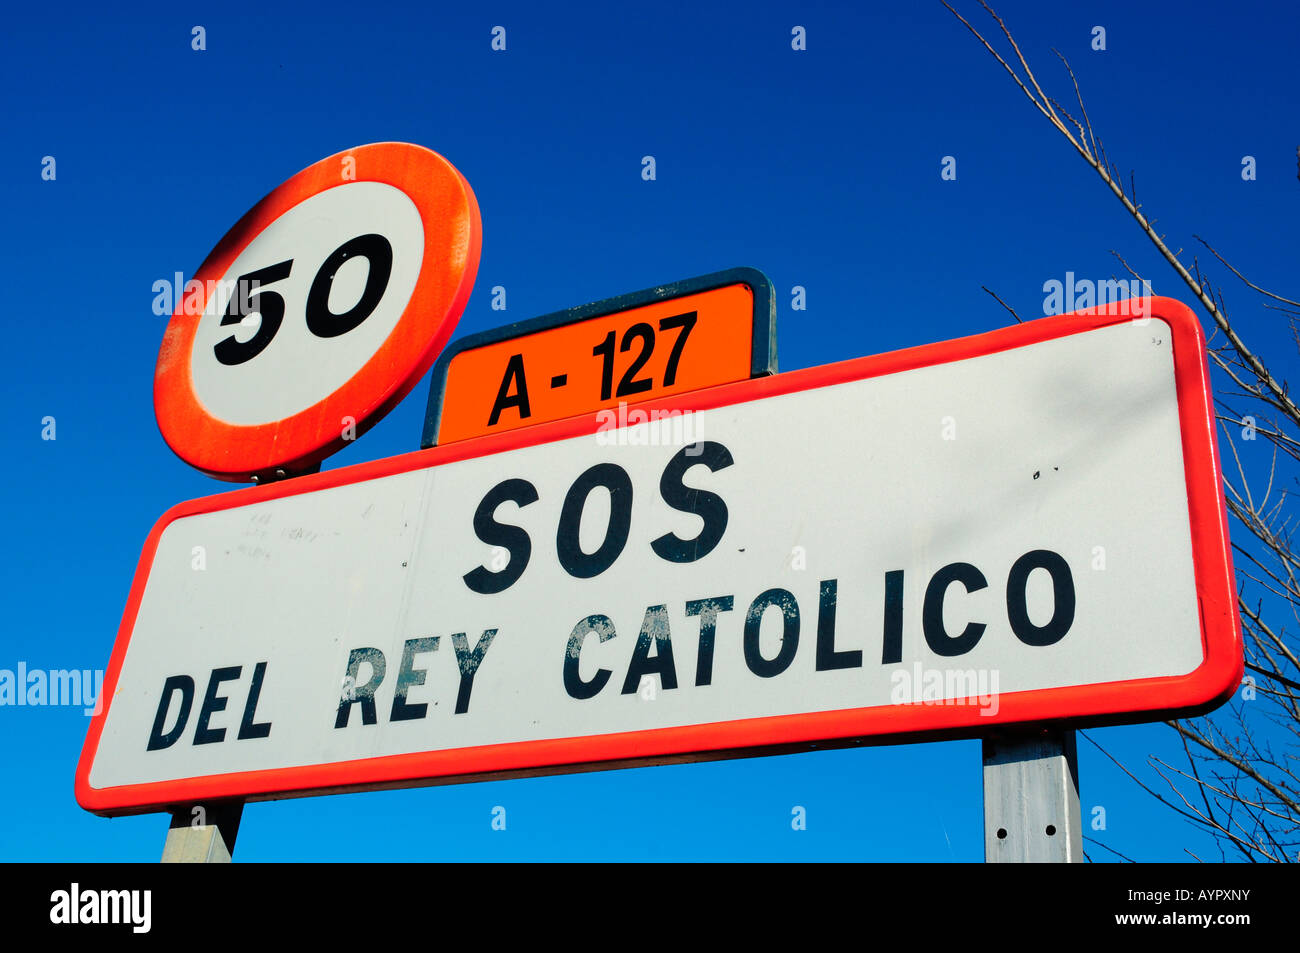 Strada segno, Sos Del Rey Catolico, provincia di Zaragoza, Aragona, Spagna, Europa Foto Stock